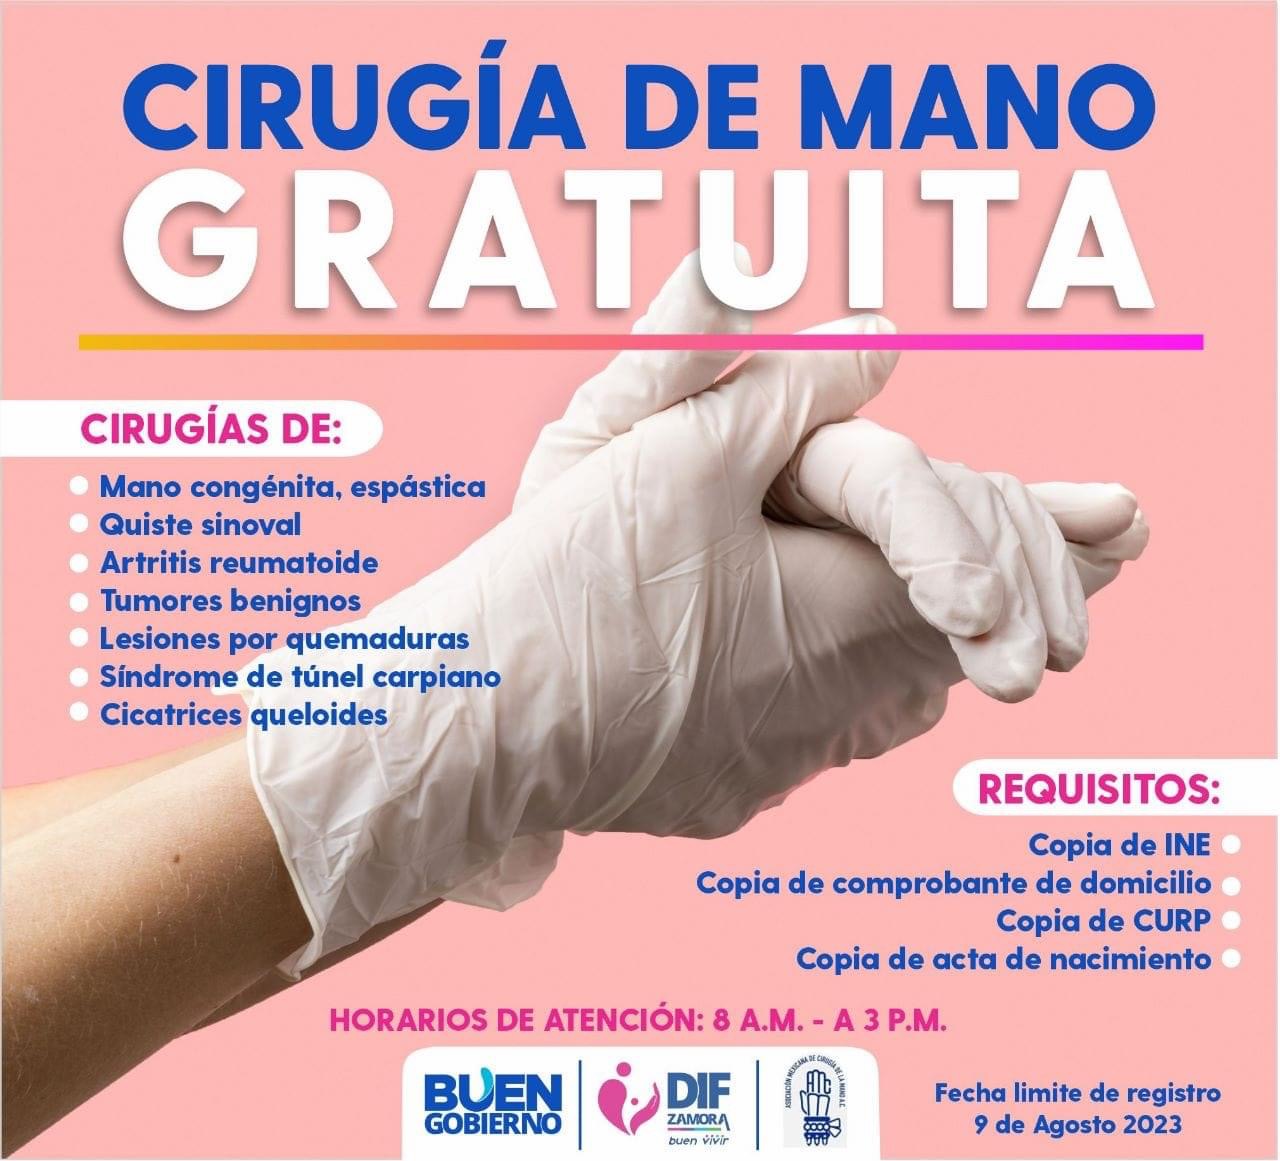 DIF Zamora invitan a la ciudadanía a campaña de salud de cirugía de mano